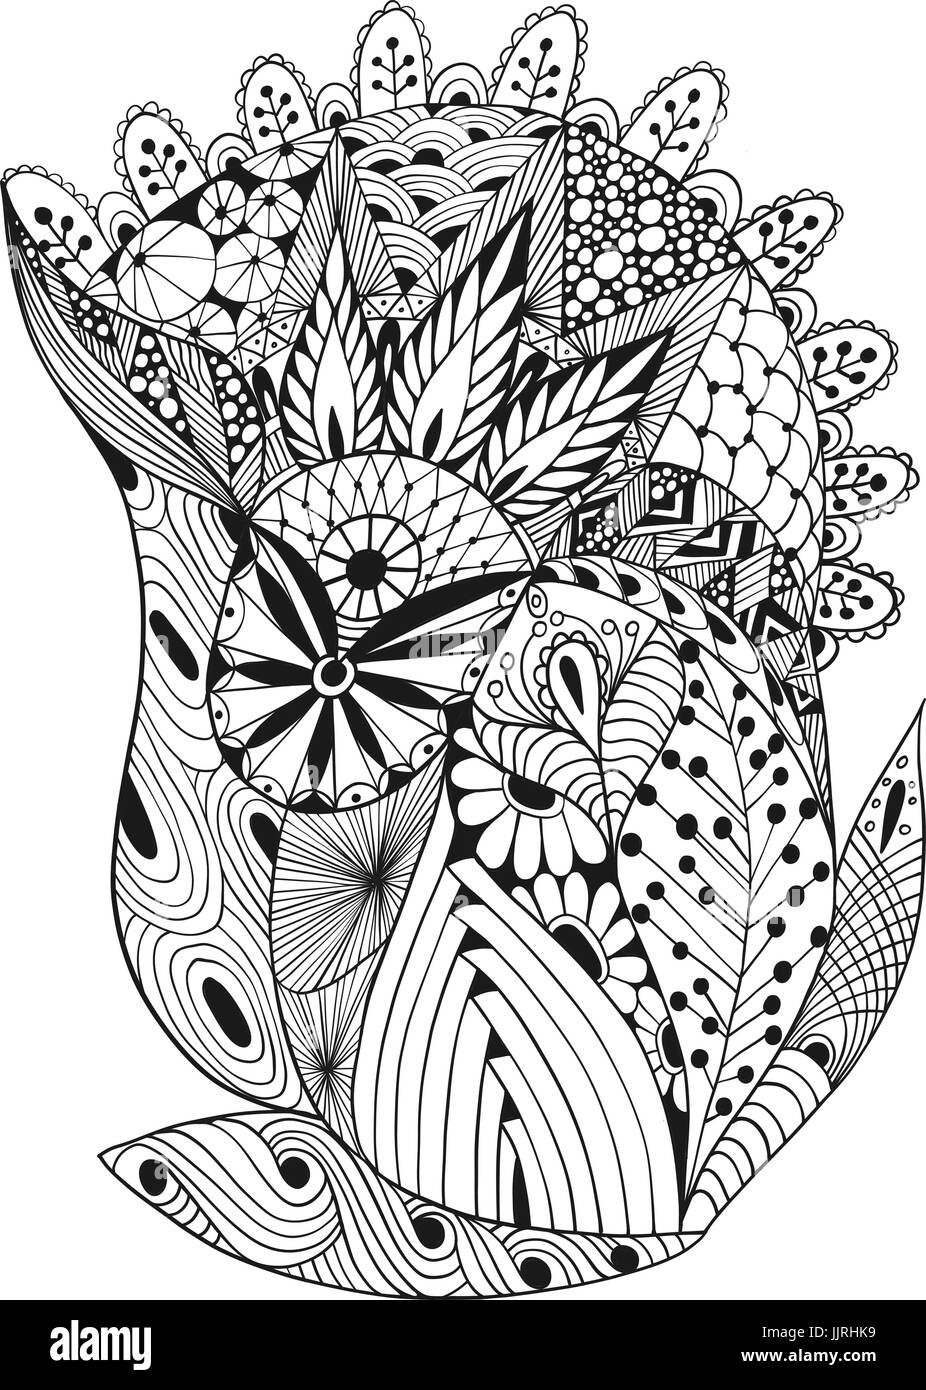 Vektor-Illustration der abstrakten dekorativen doodles Stock Vektor